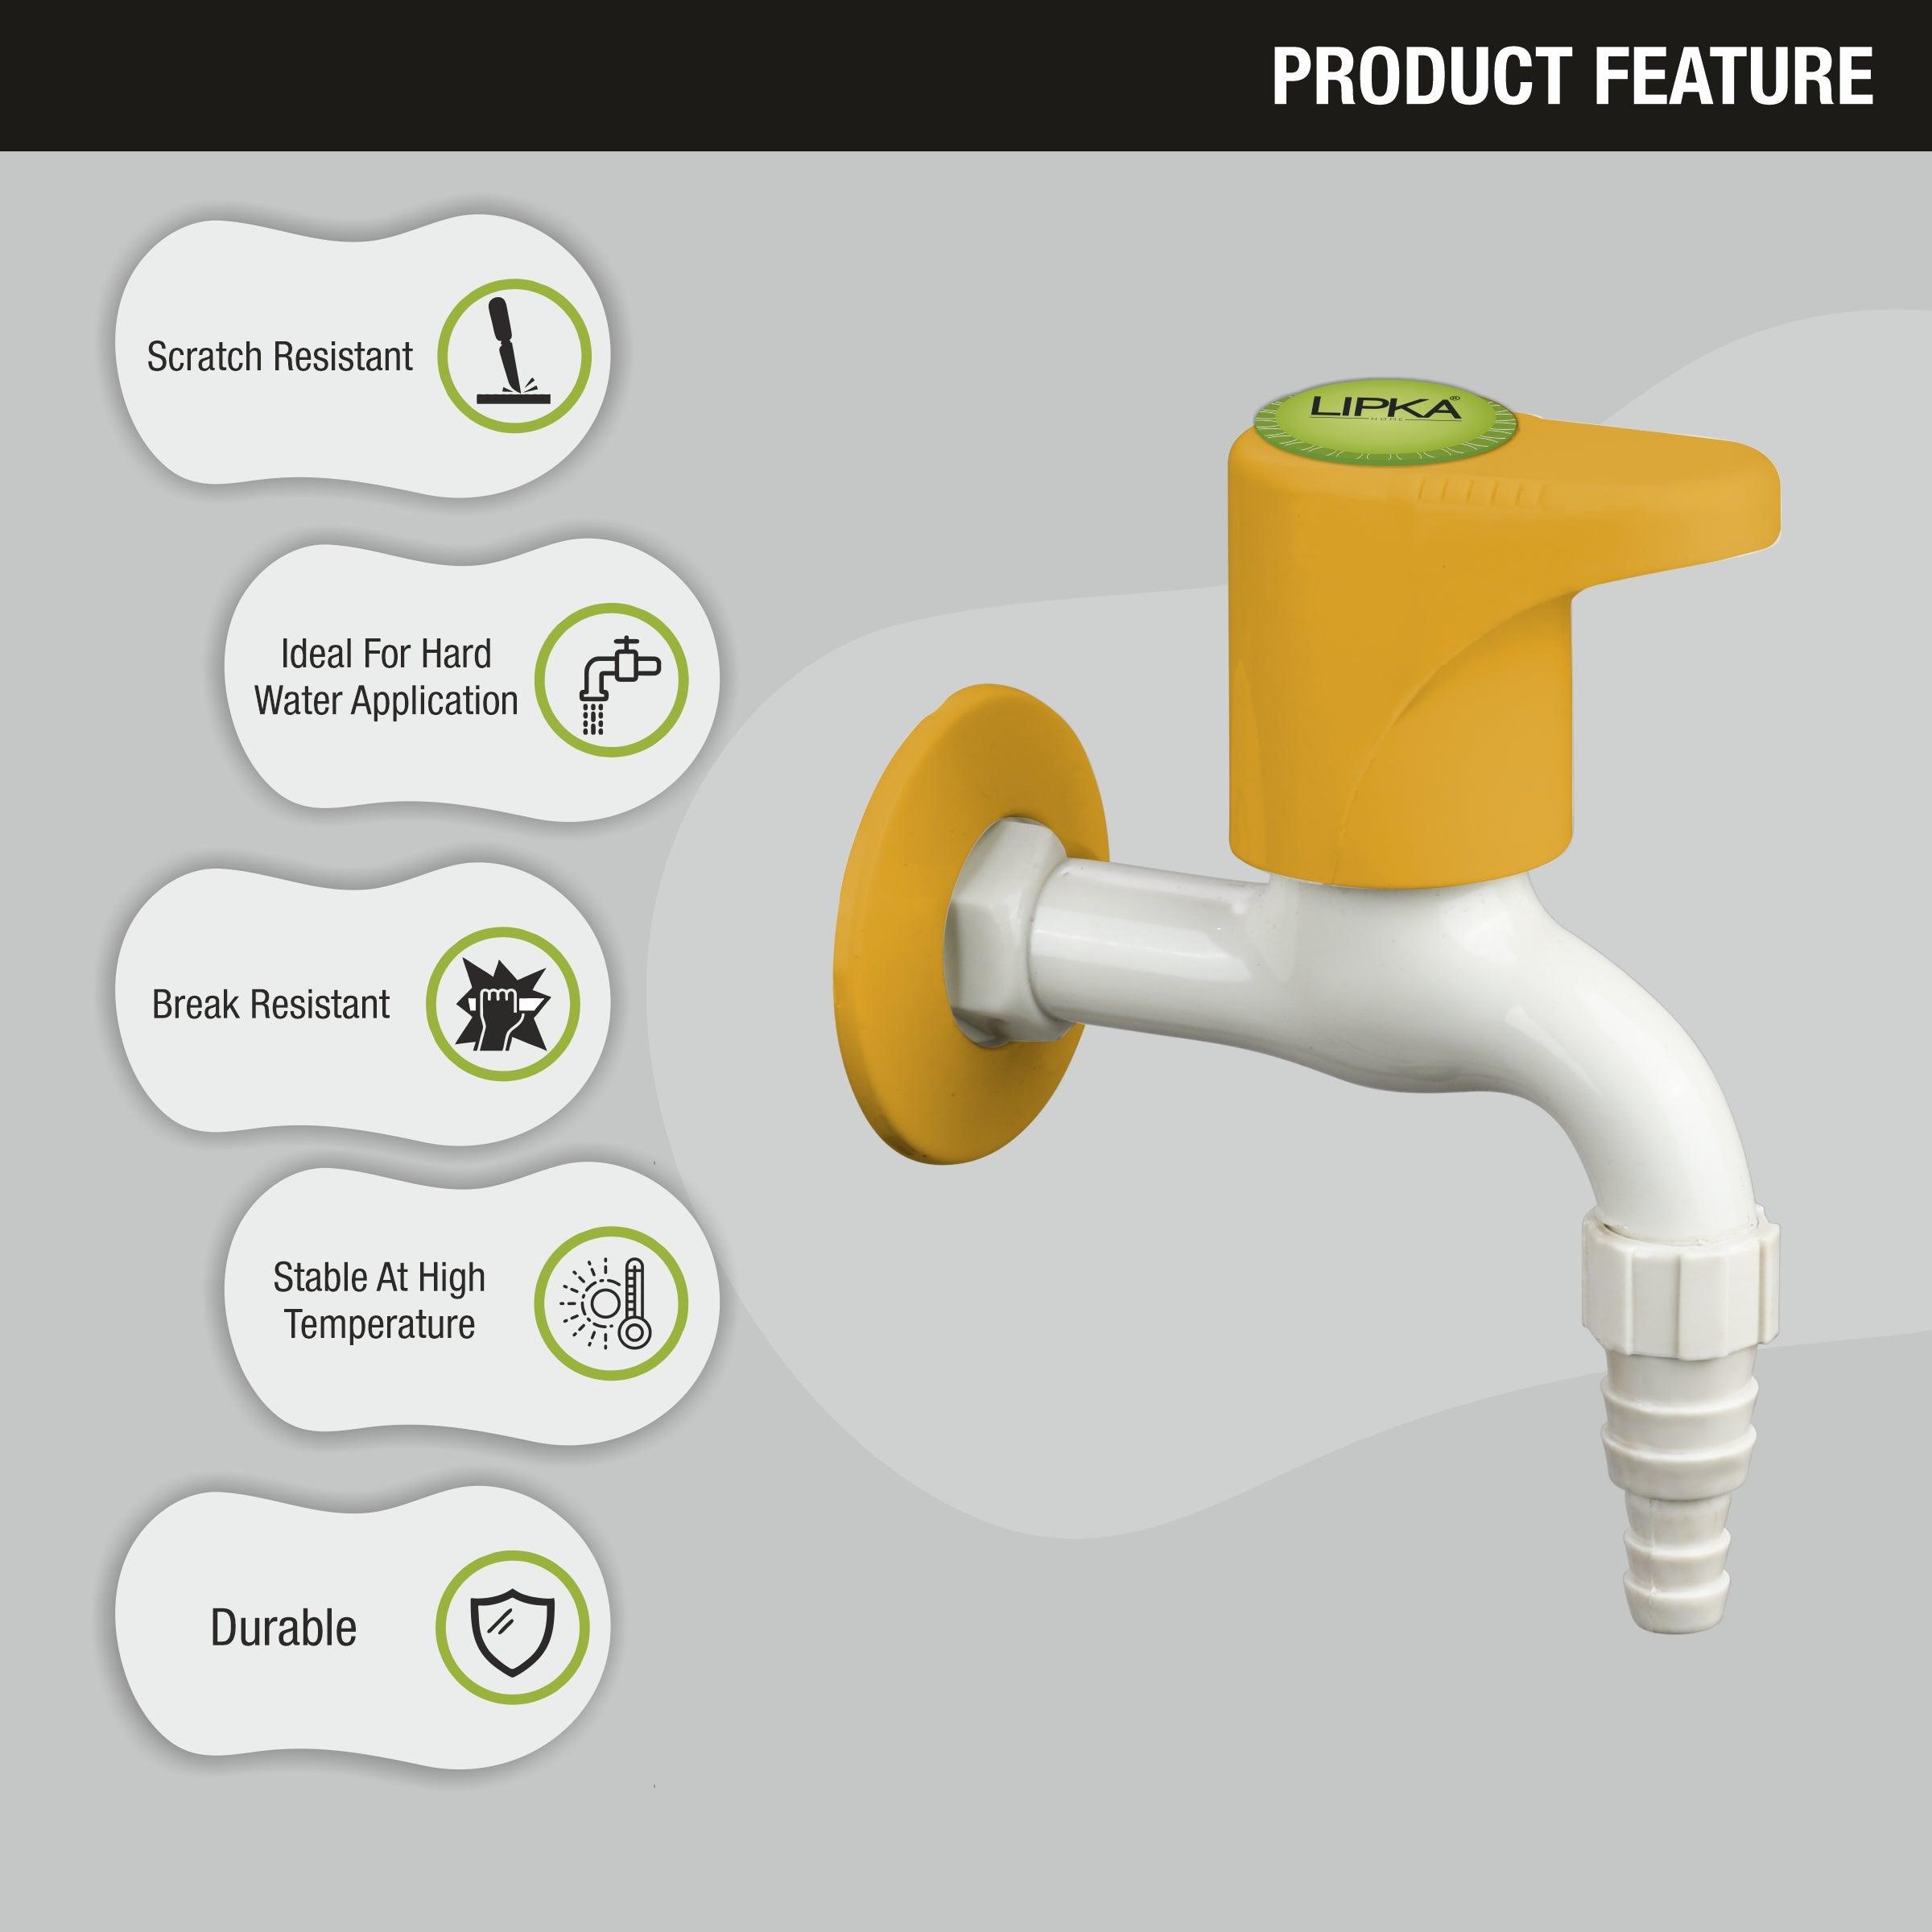 Sunflow Nozzle Bib Tap PTMT Faucet features